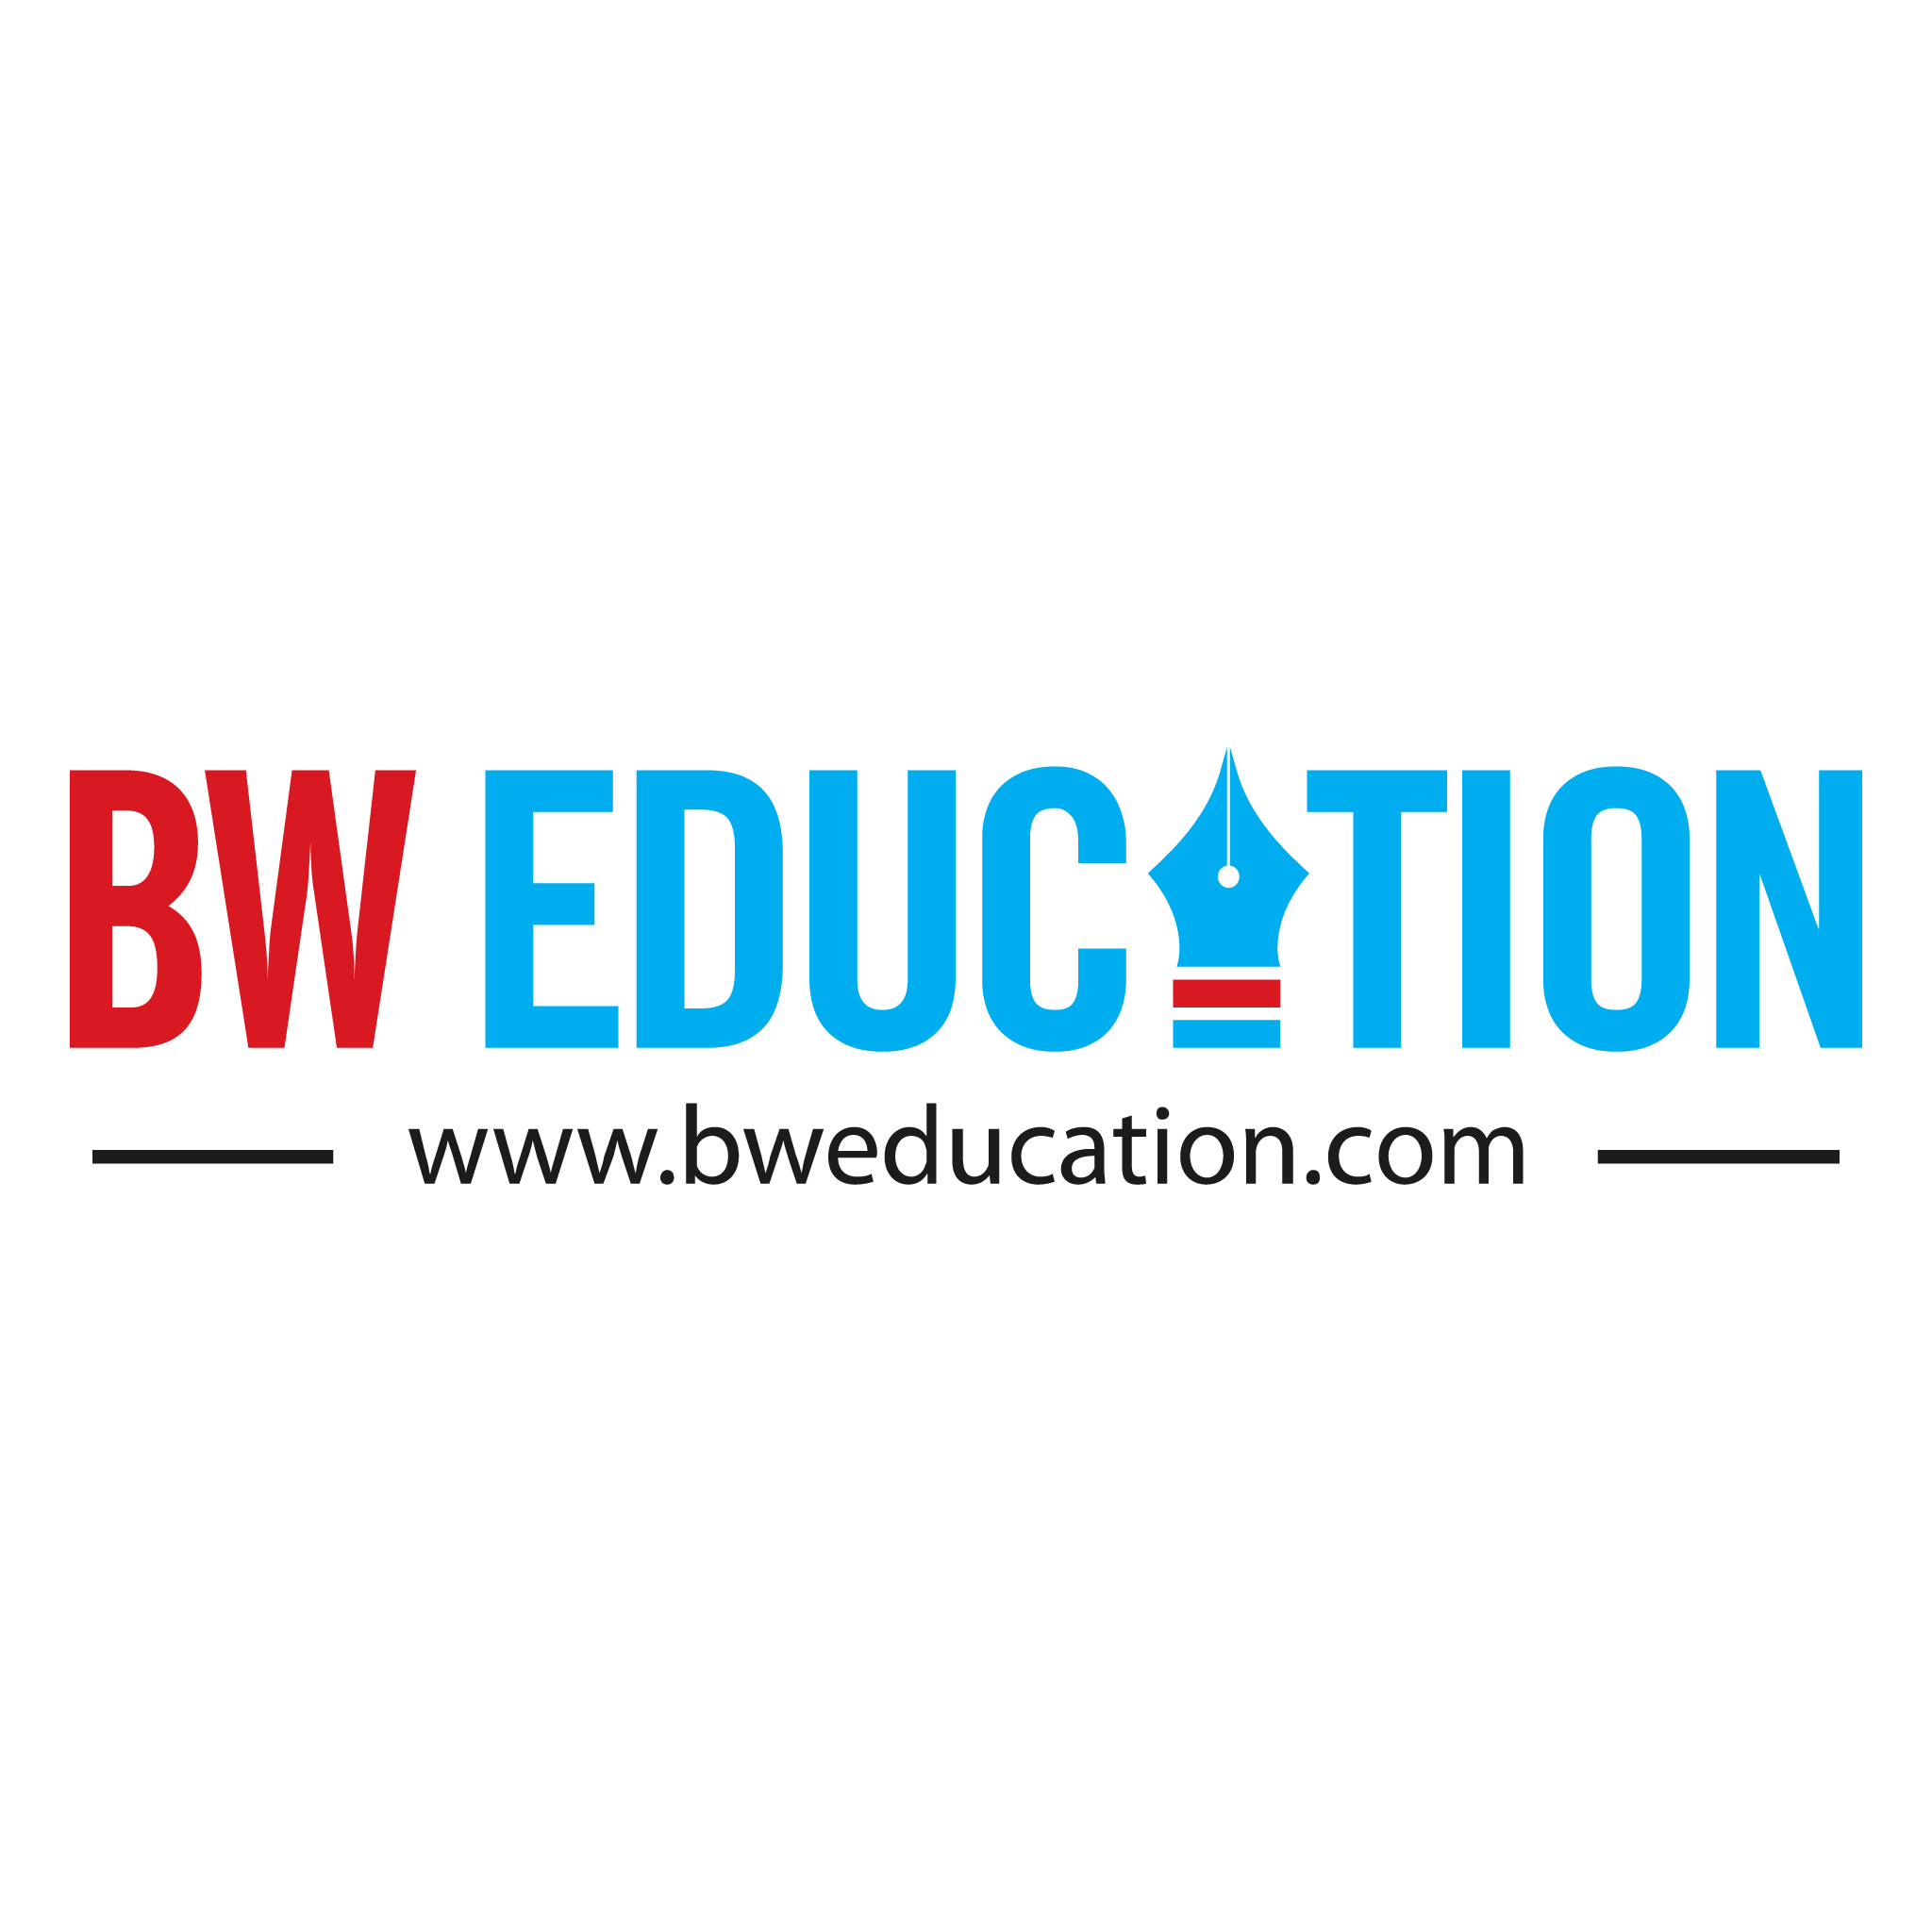 BW Education 40 under 40 Summit & Awards 2023